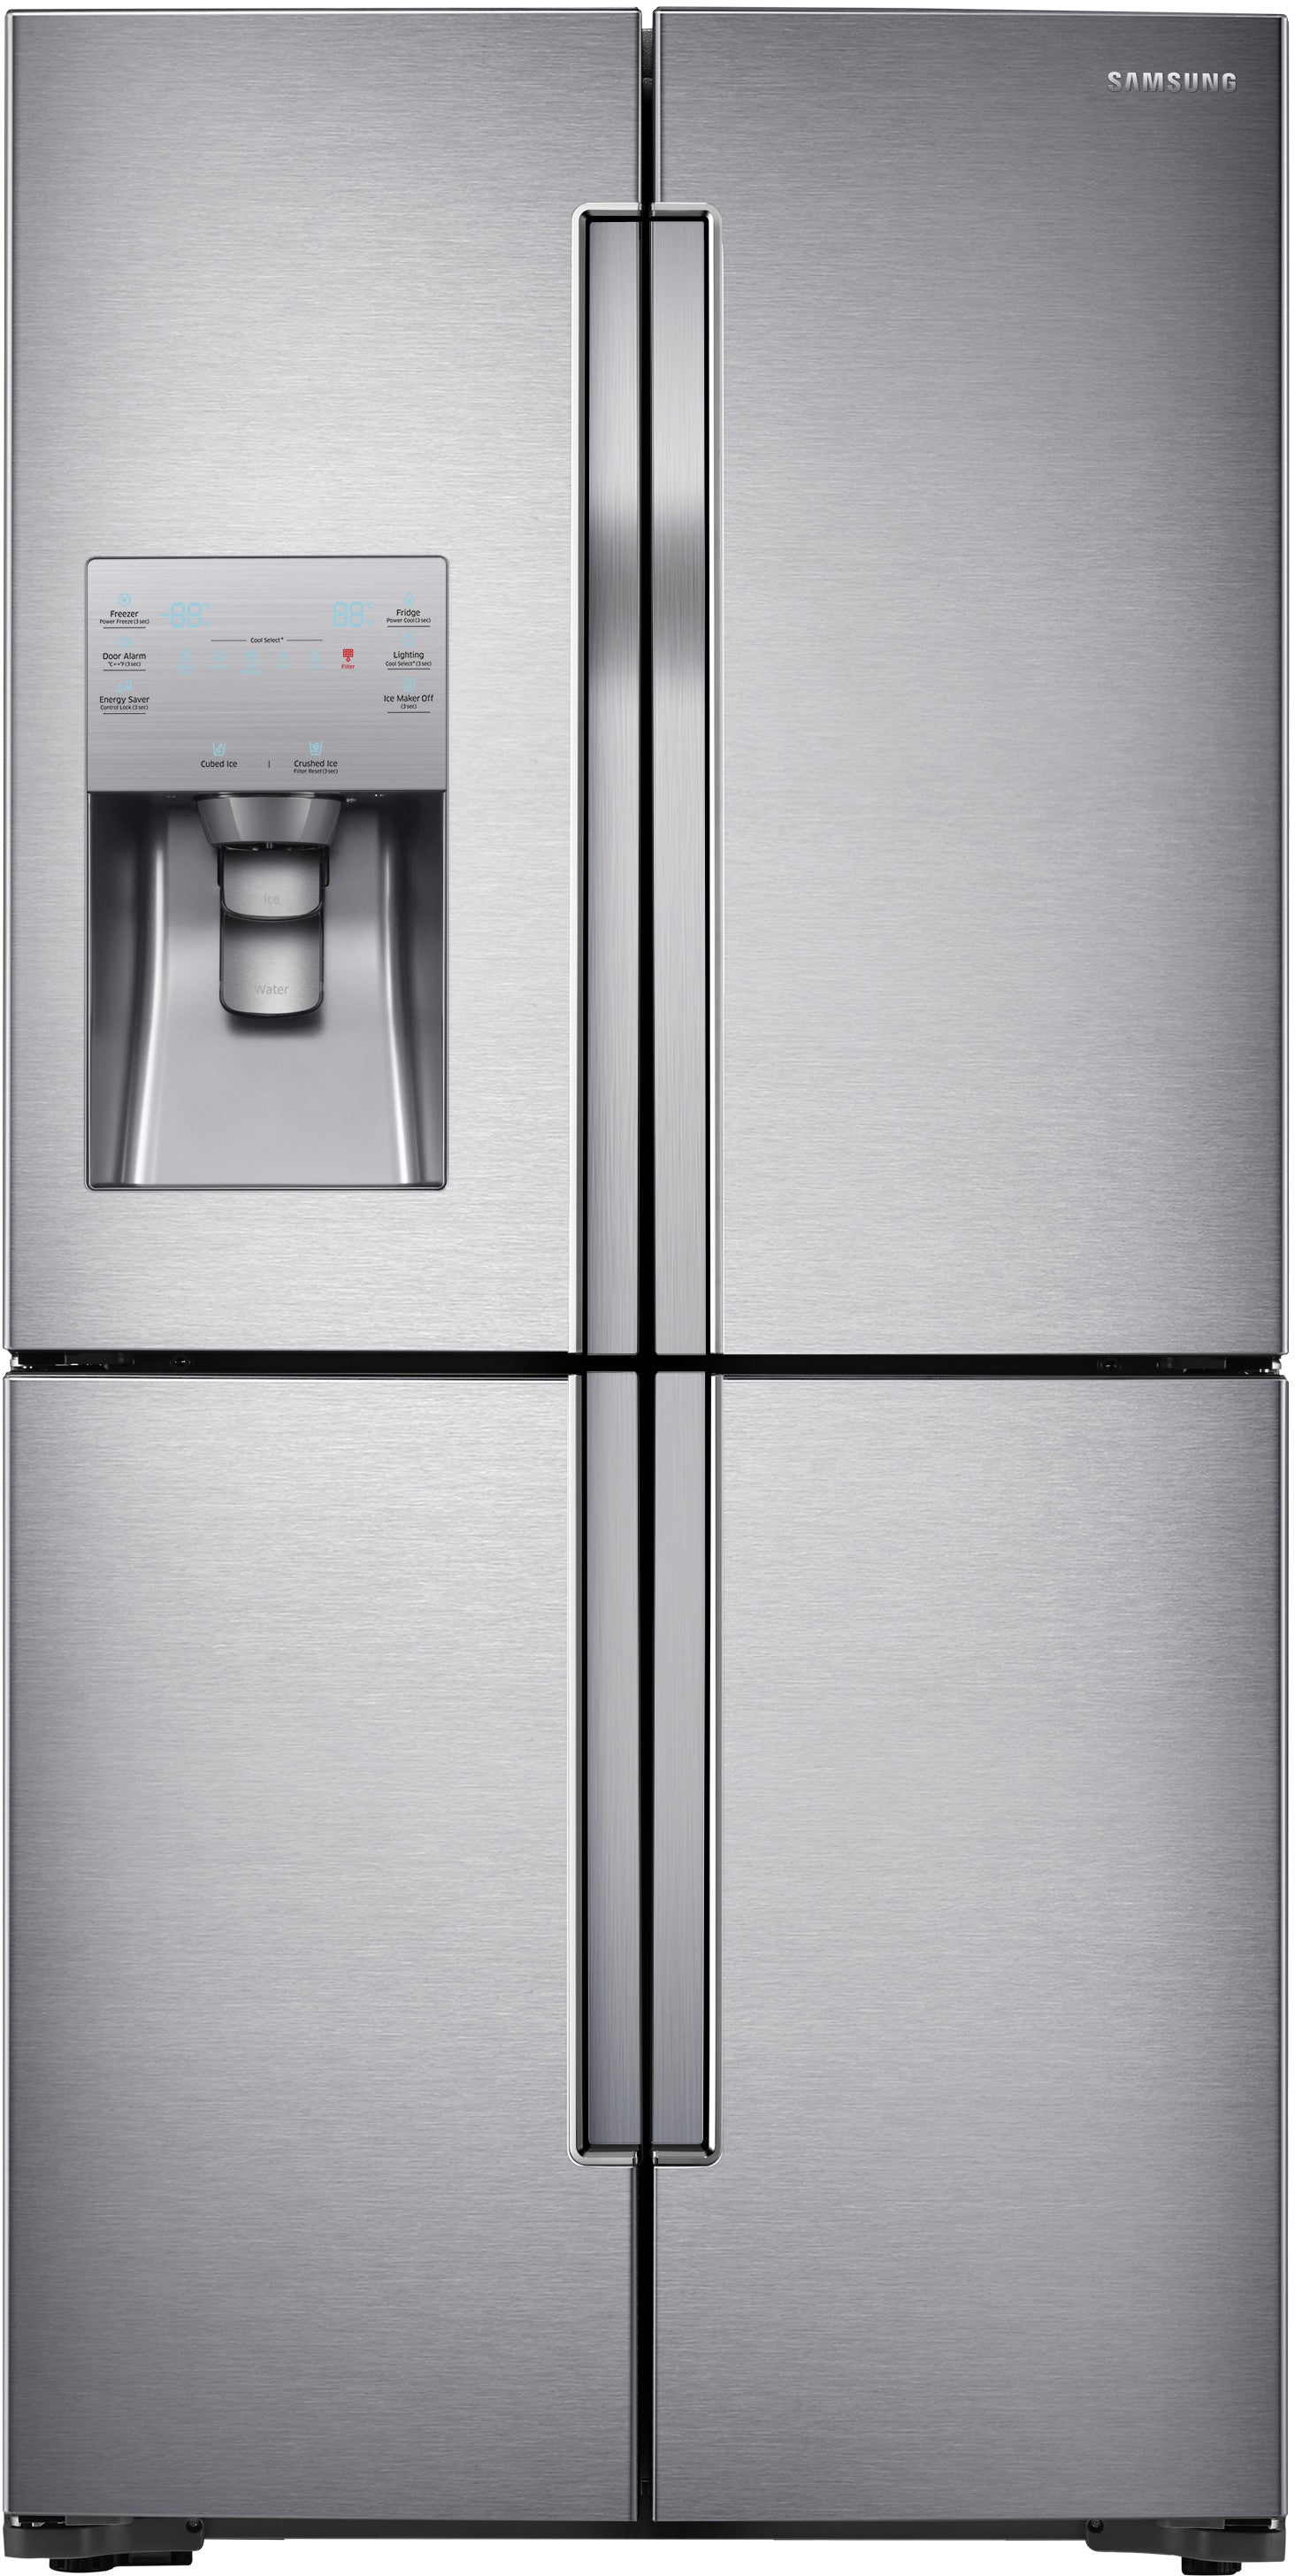 Samsung RF23J9011SR/AA 23 Cu. Ft. Counter Depth 4-Door Refrigerator